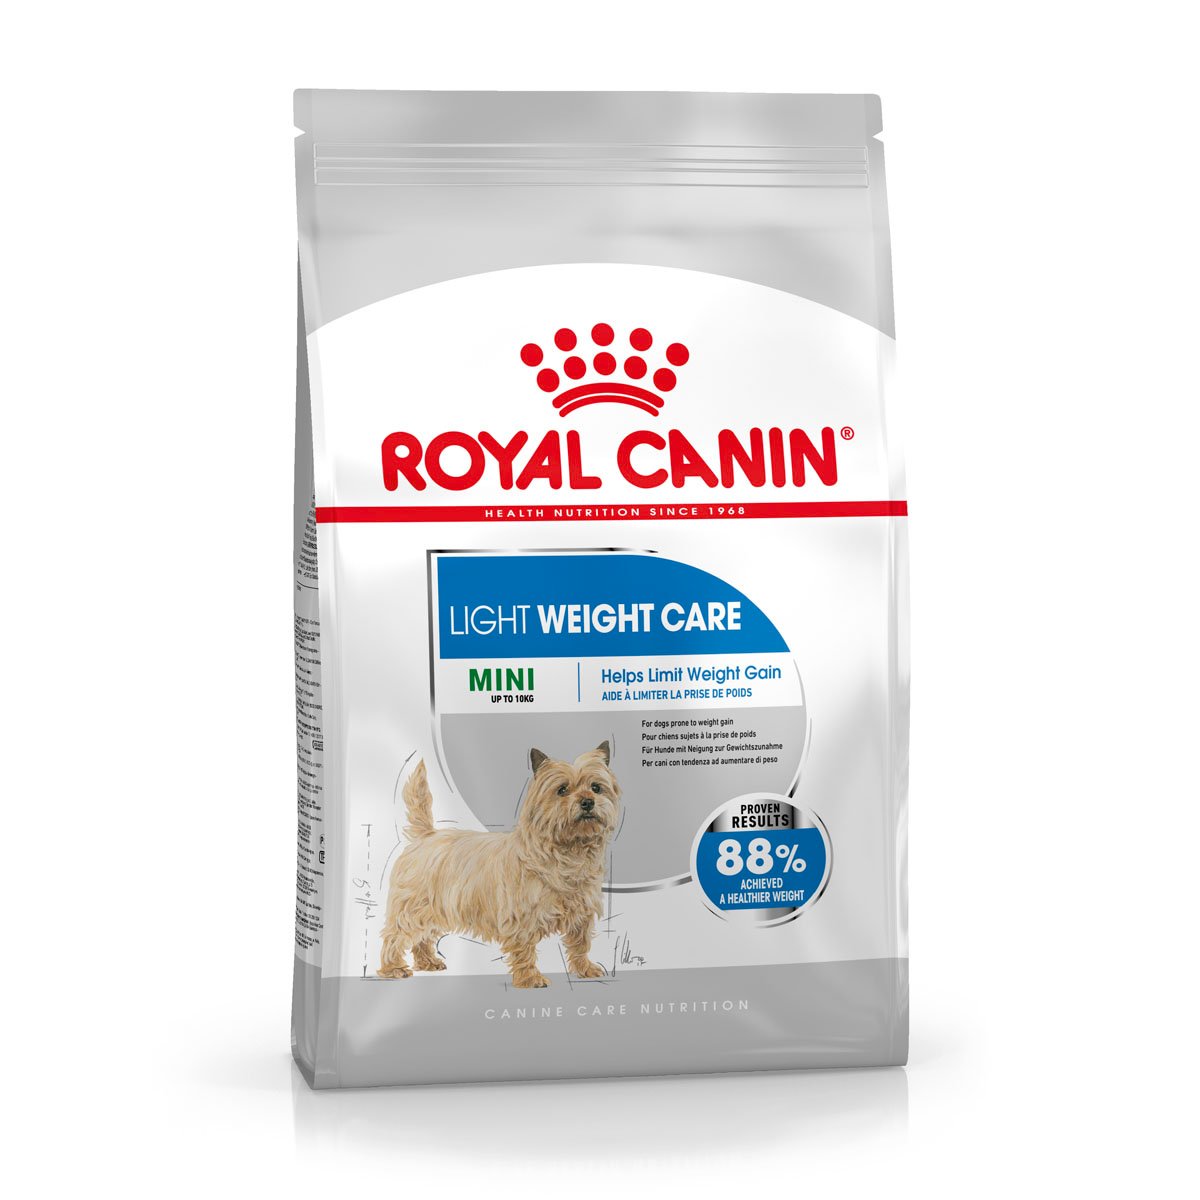 ROYAL CANIN LIGHT WEIGHT CARE MINI Trockenfutter für zu Übergewicht neigenden Hunden 8kg von Royal Canin